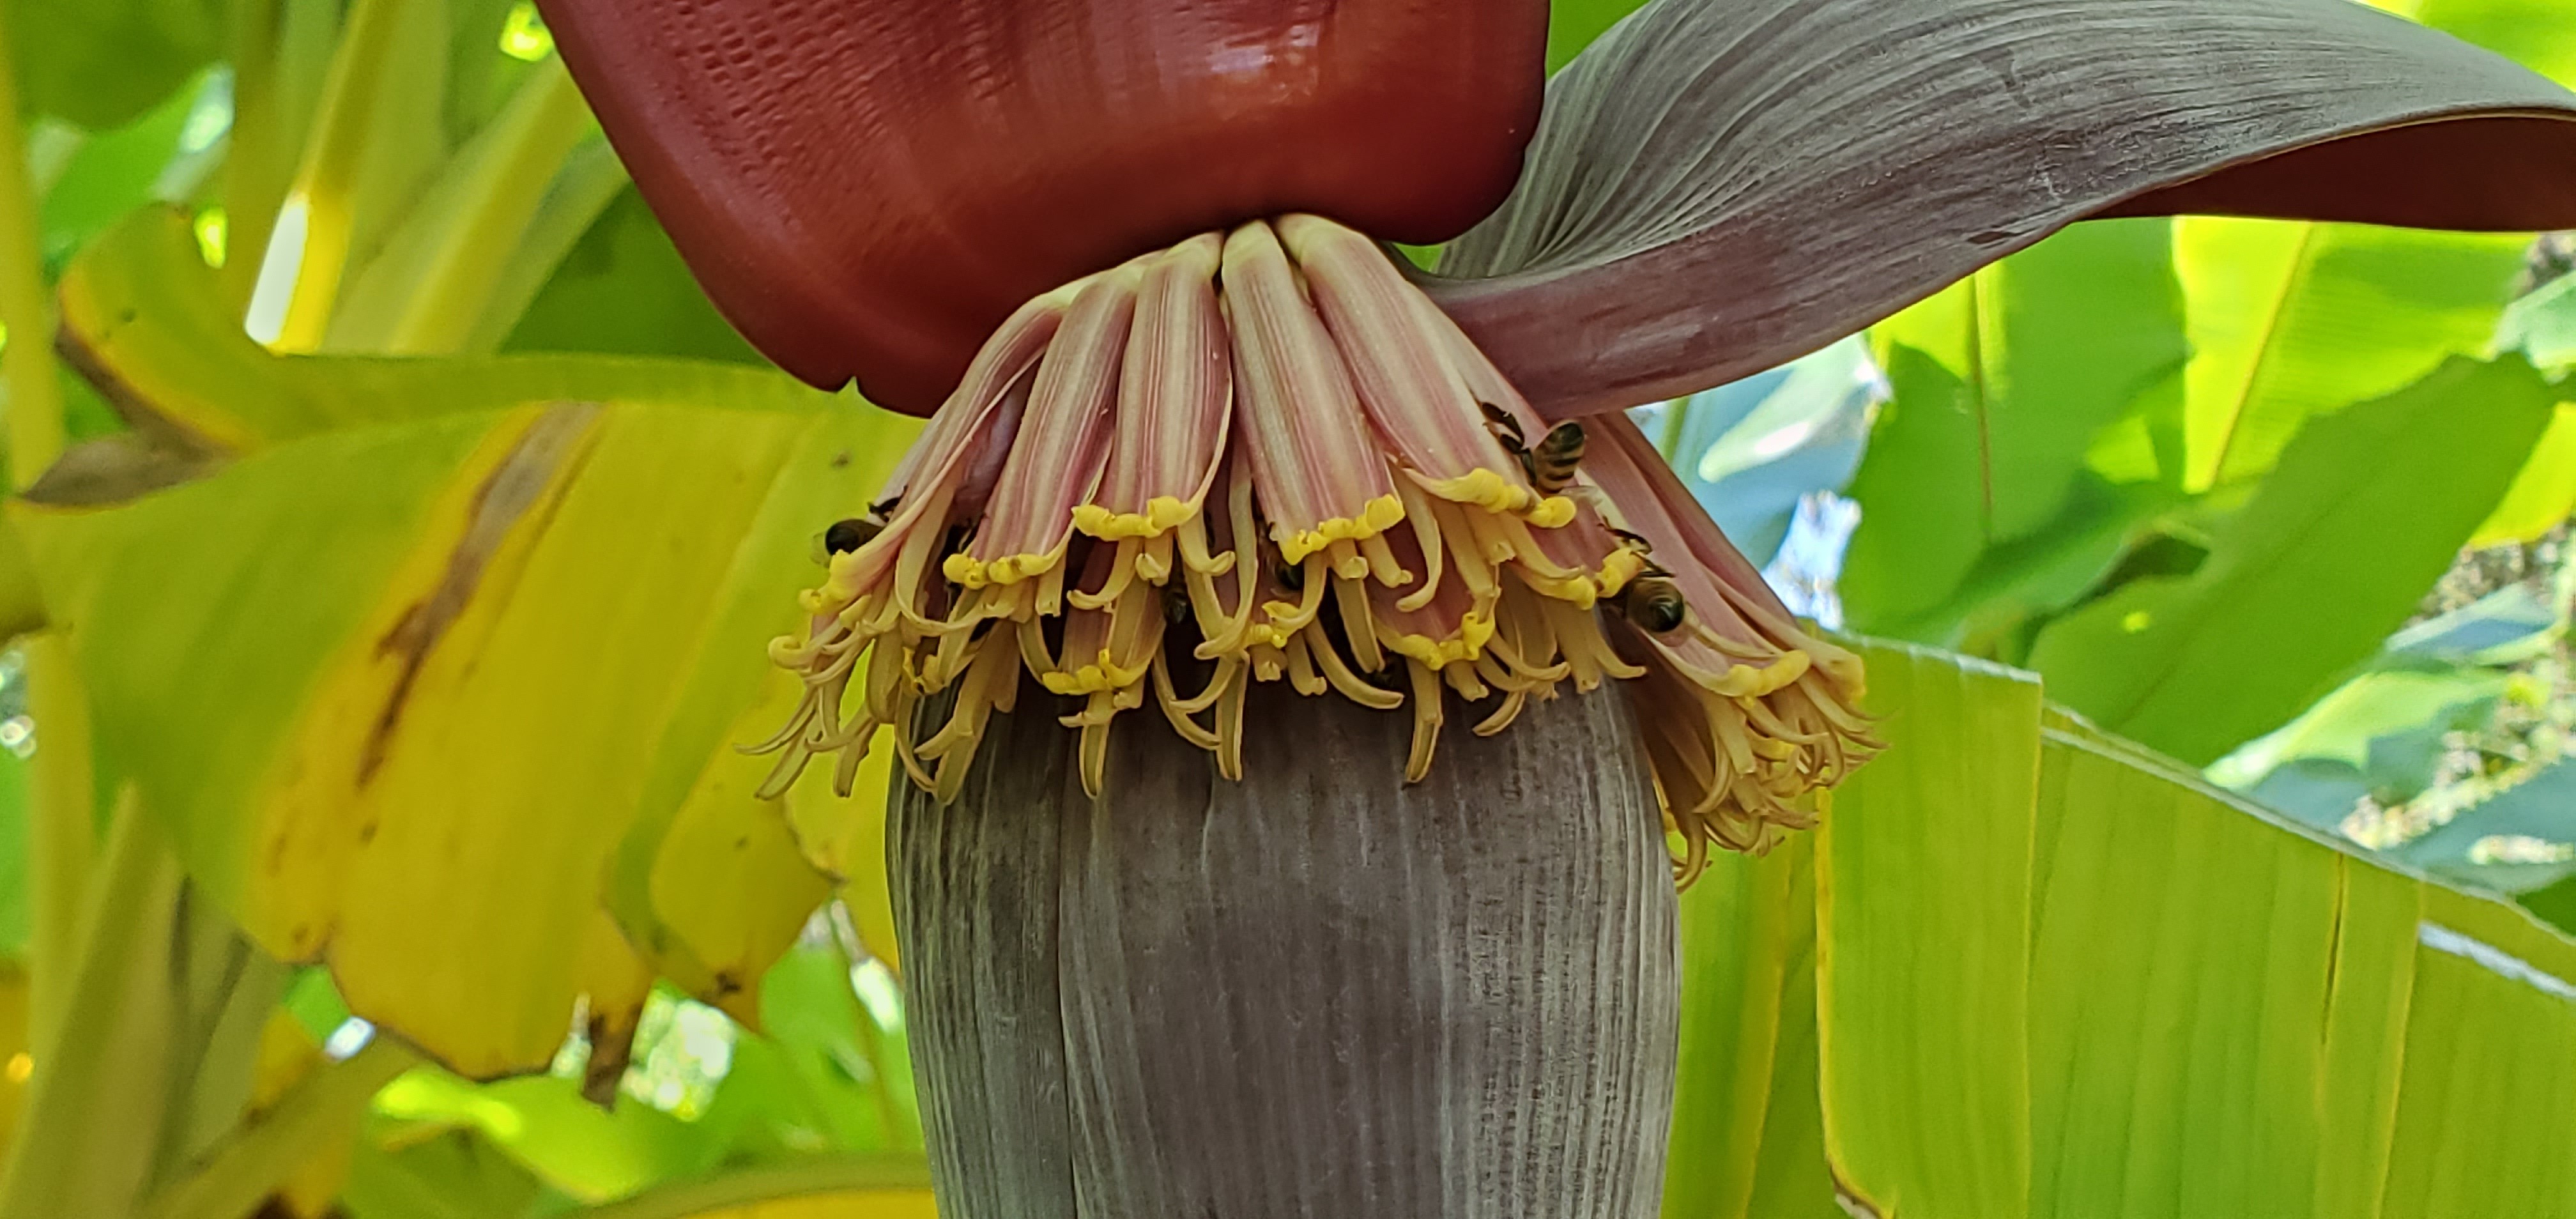 On the banana flower